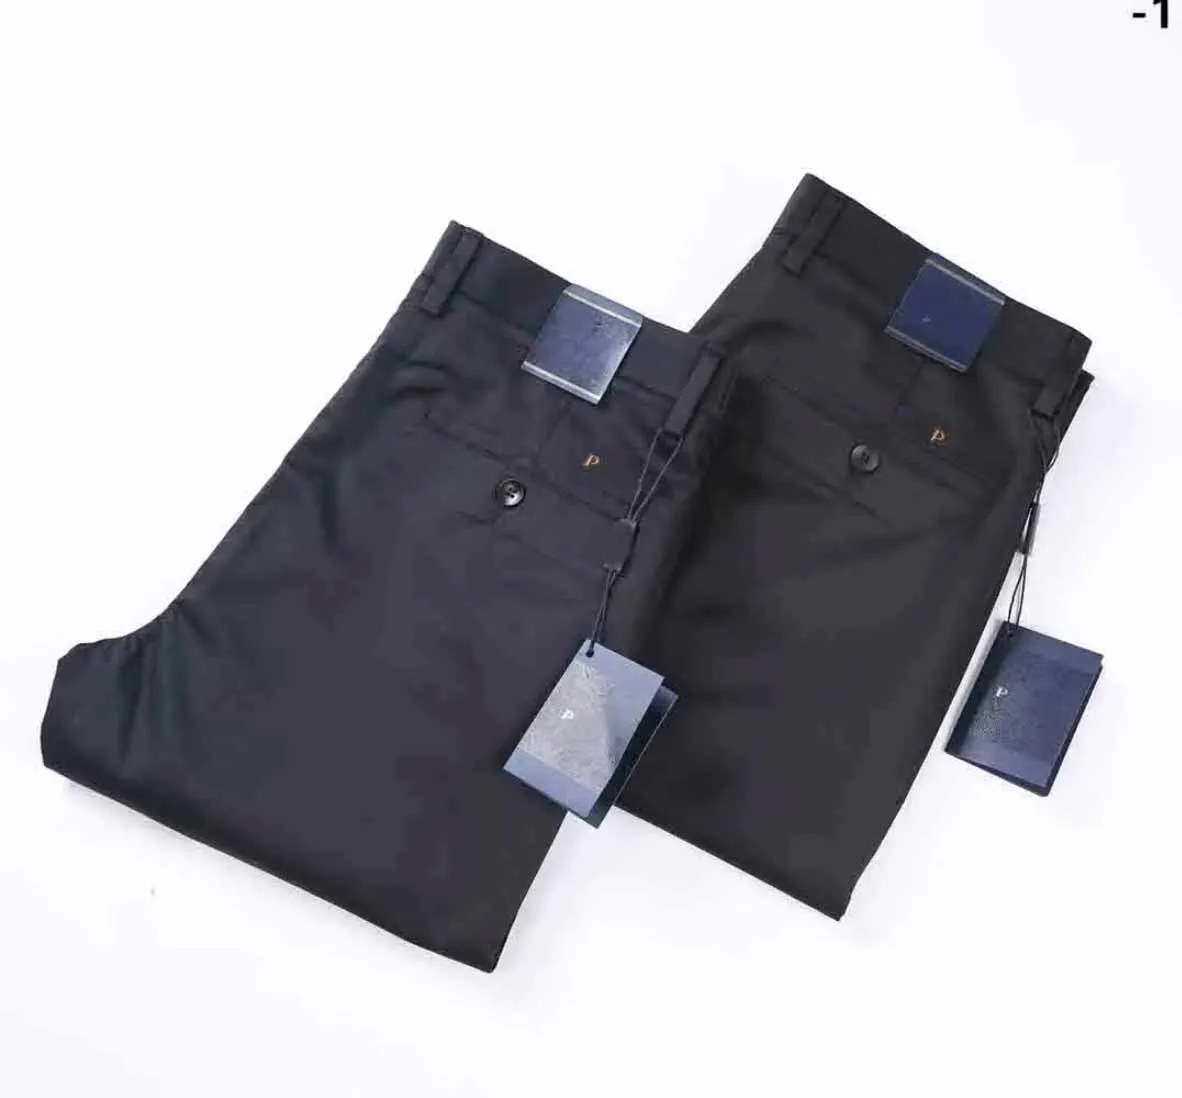 PAA Designer Luxury maschi's pantaloni abbigliamento pantaloni pantaloni casual marca di moda leggings solido color leggings nero blu a 2 colori elastico vita all'ingrosso